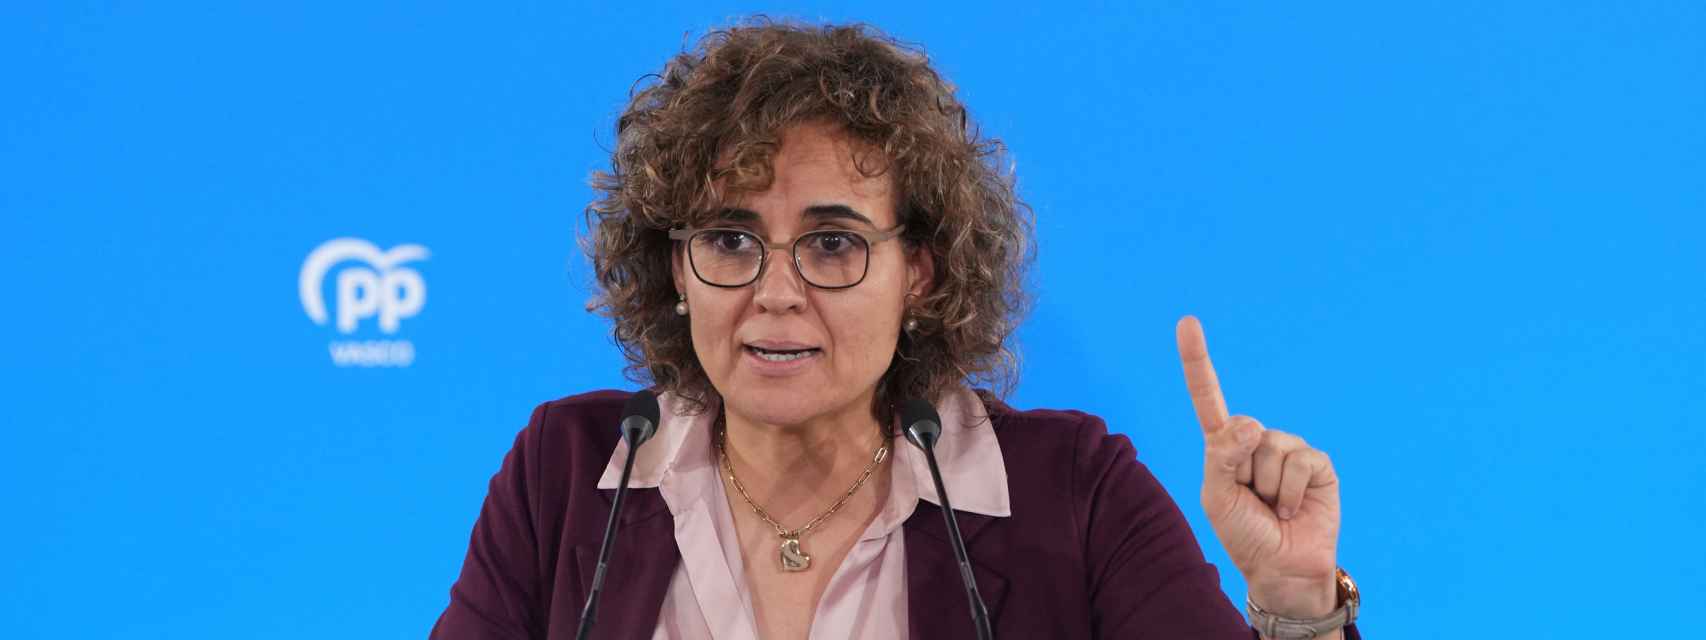 La directora de campaña del PP para las elecciones catalanas del 12 de mayo, Dolors Montserrat.